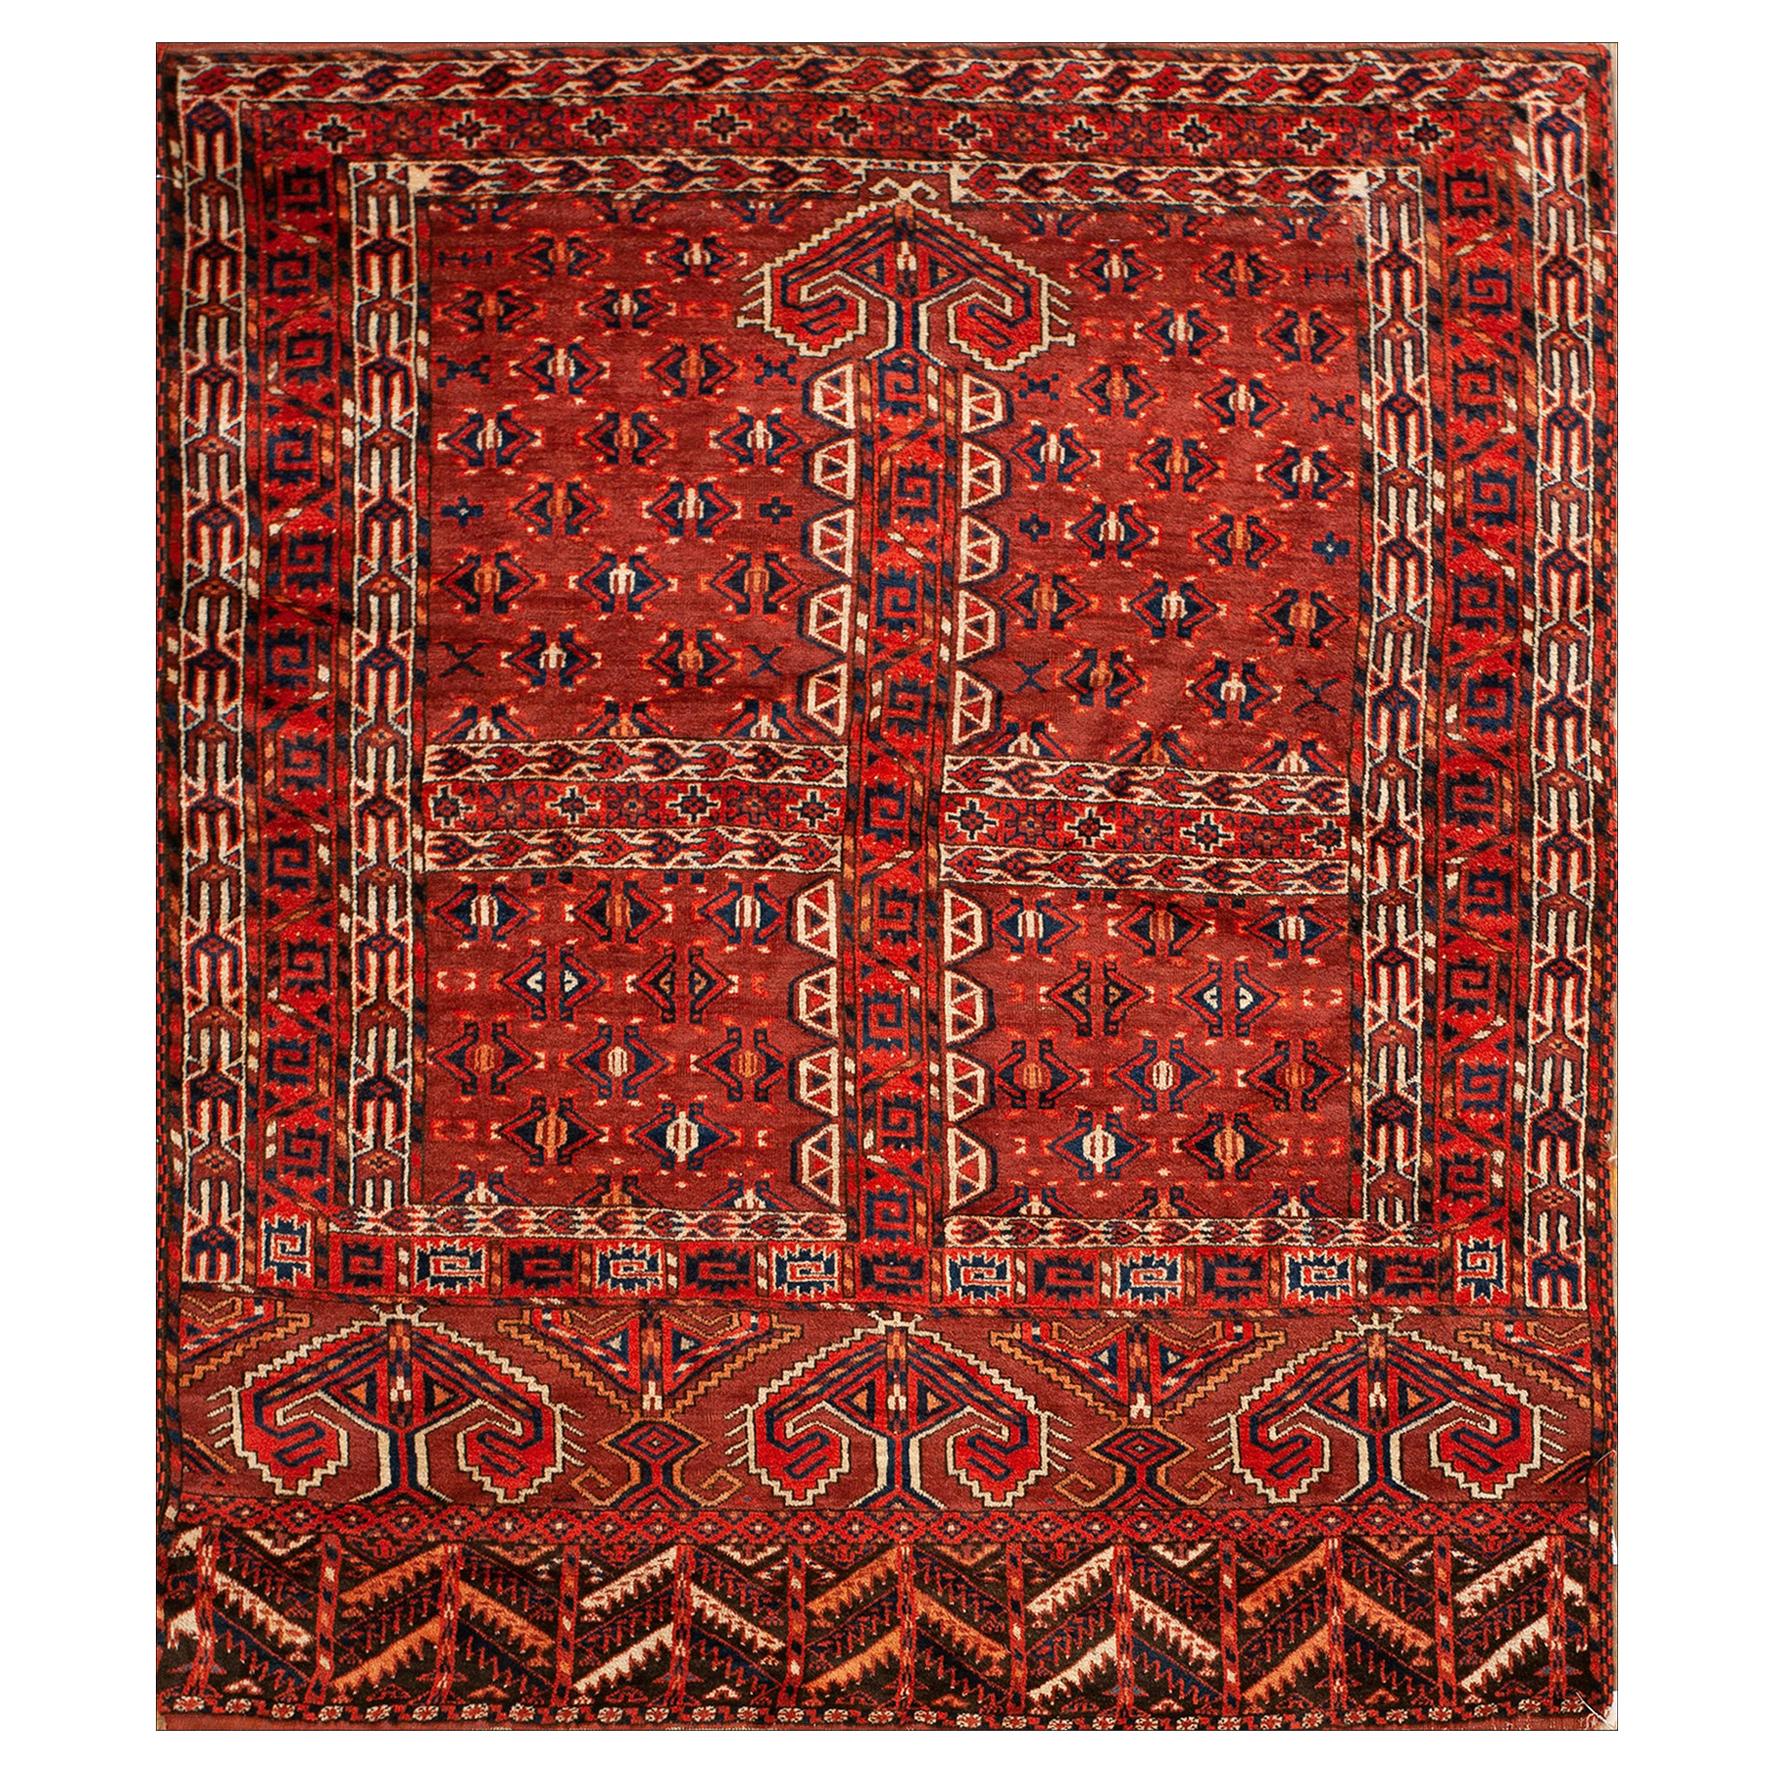 19th Century Turkmen Engsi Carpet ( 4 7" x 5'2" - 140 x 157 ) For Sale